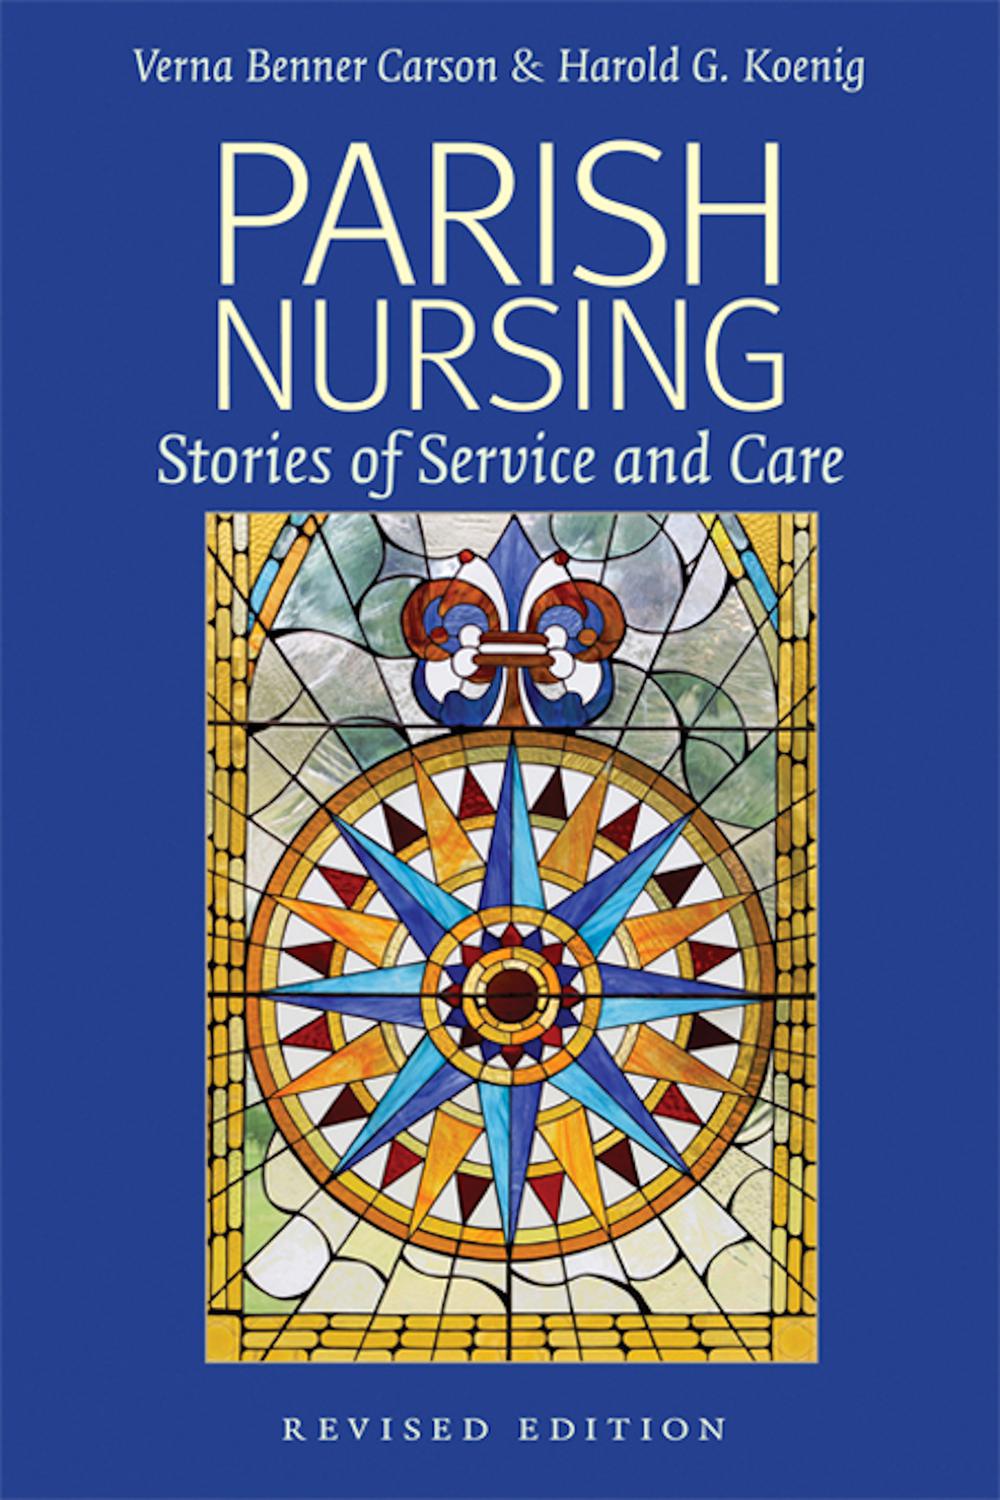 Parish Nursing - 2011 Edition - Verna Benner Carson, Harold G Koenig